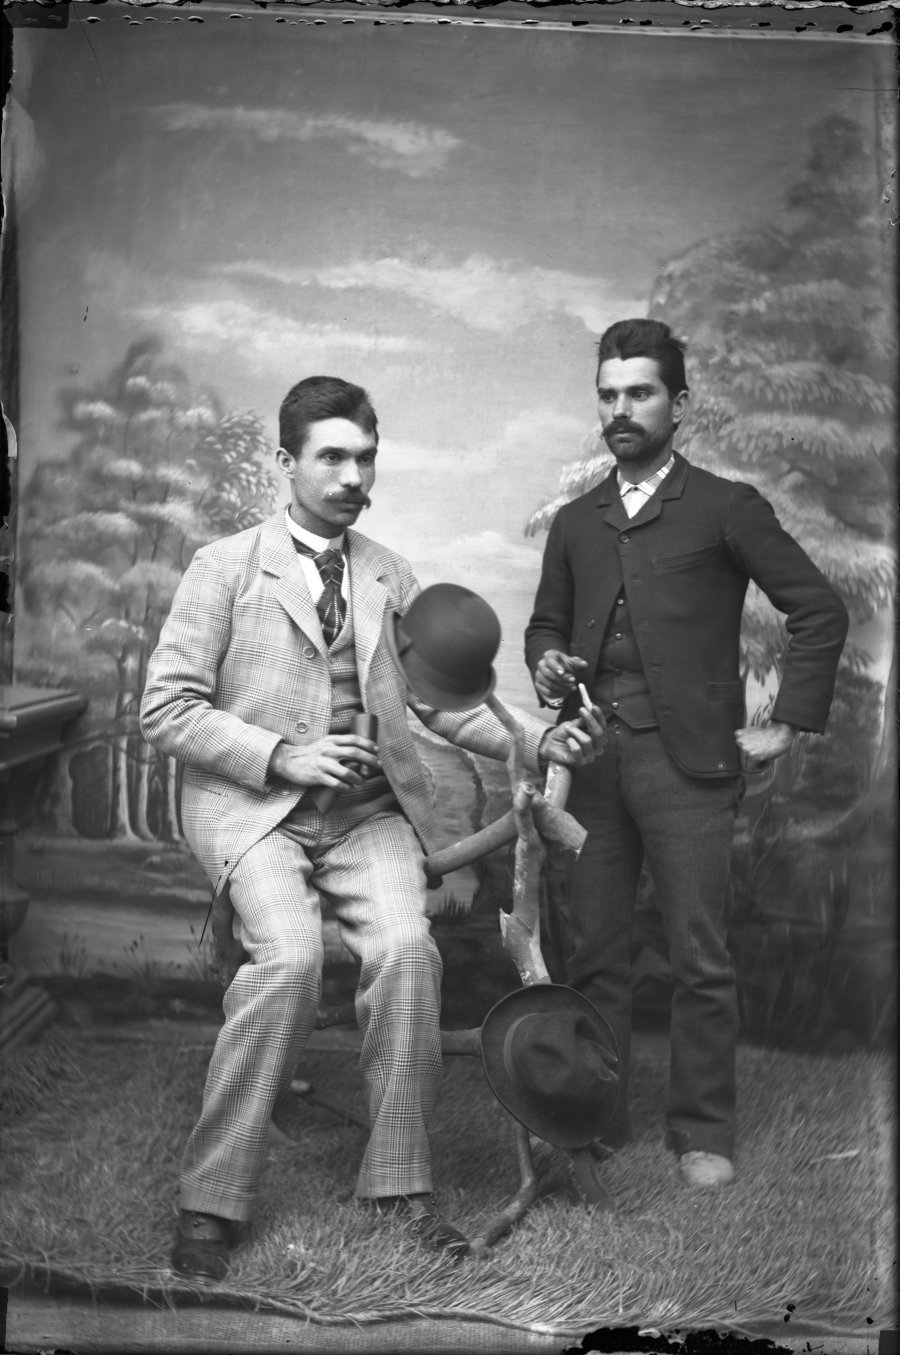 Retrato de estudio de dos hombres jóvenes, probablemente hermanos